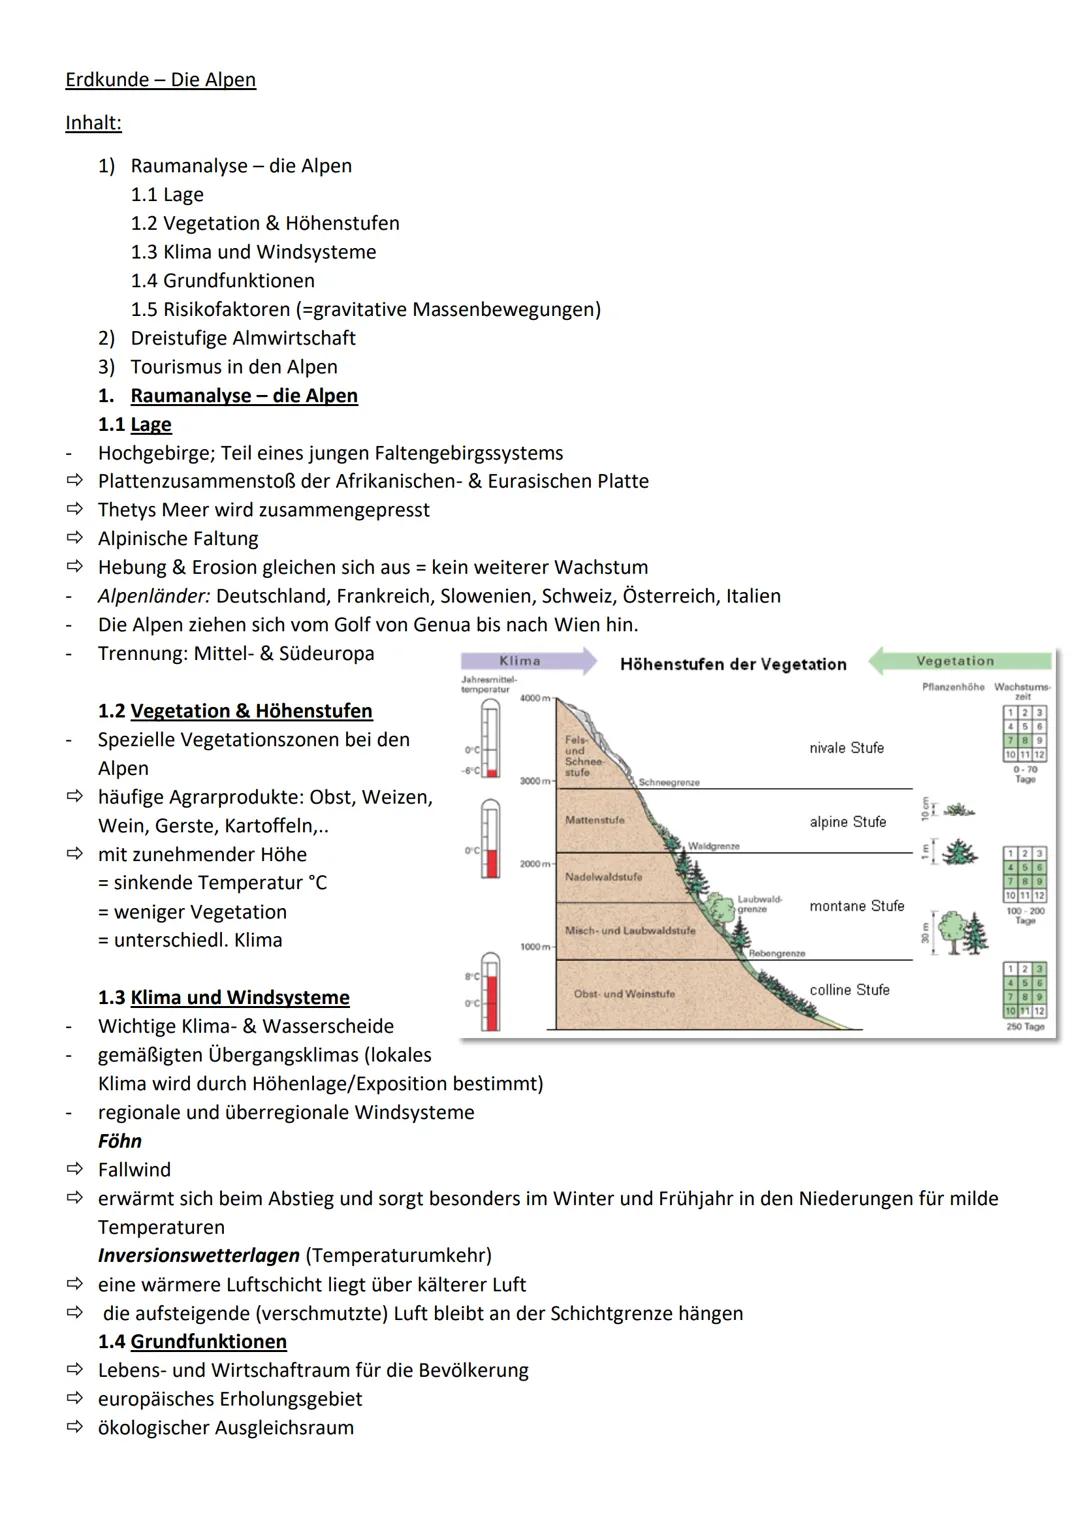 Erdkunde Die Alpen
Inhalt:
1) Raumanalyse - die Alpen
1.1 Lage
1.2 Vegetation & Höhenstufen
1.3 Klima und Windsysteme
1.4 Grundfunktionen
1.